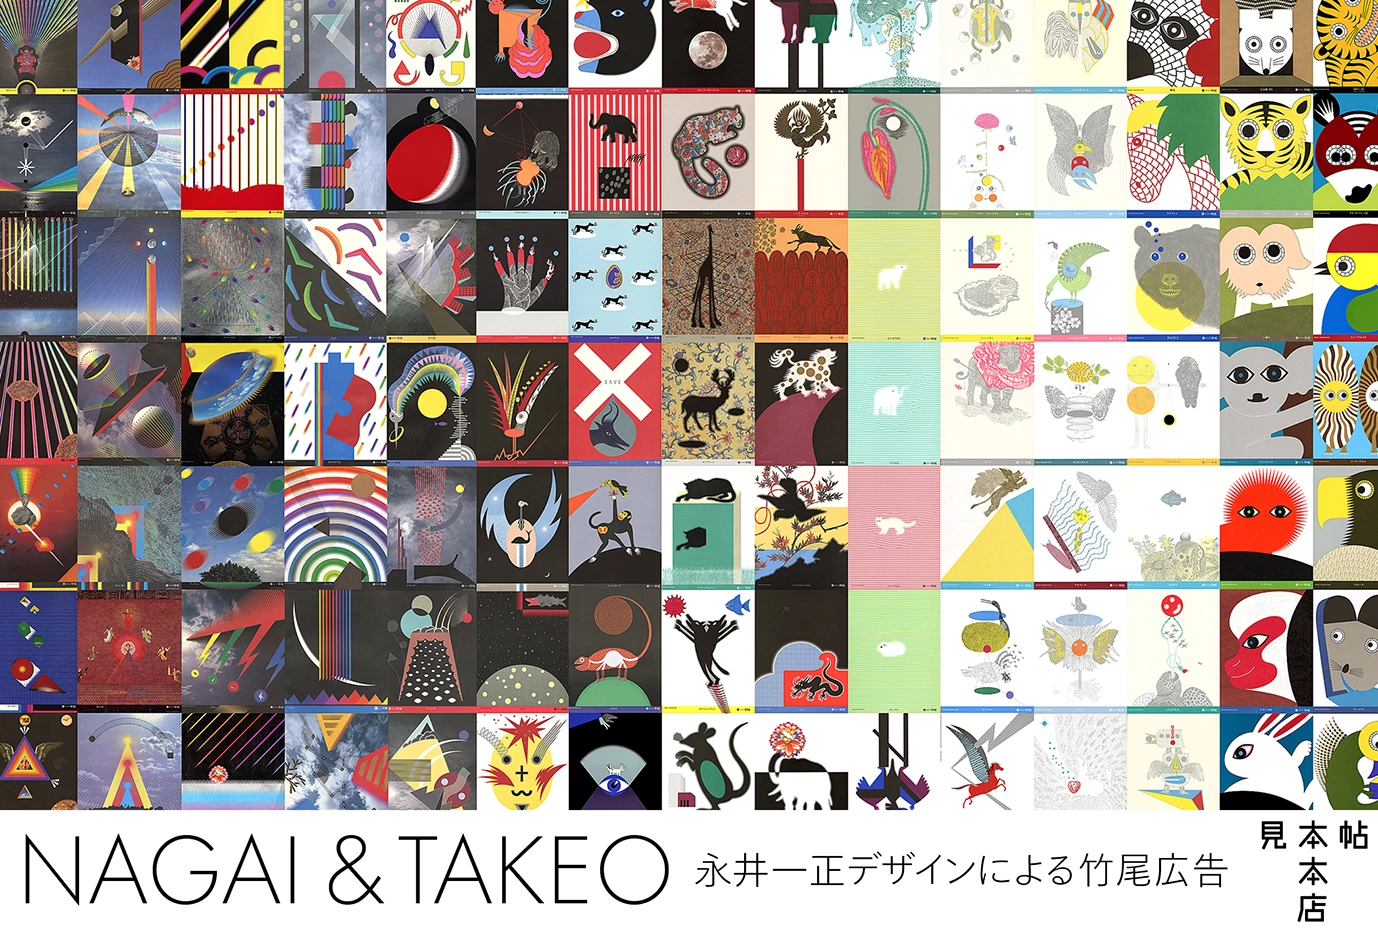 NAGAI & TAKEO ――永井一正デザインによる竹尾広告